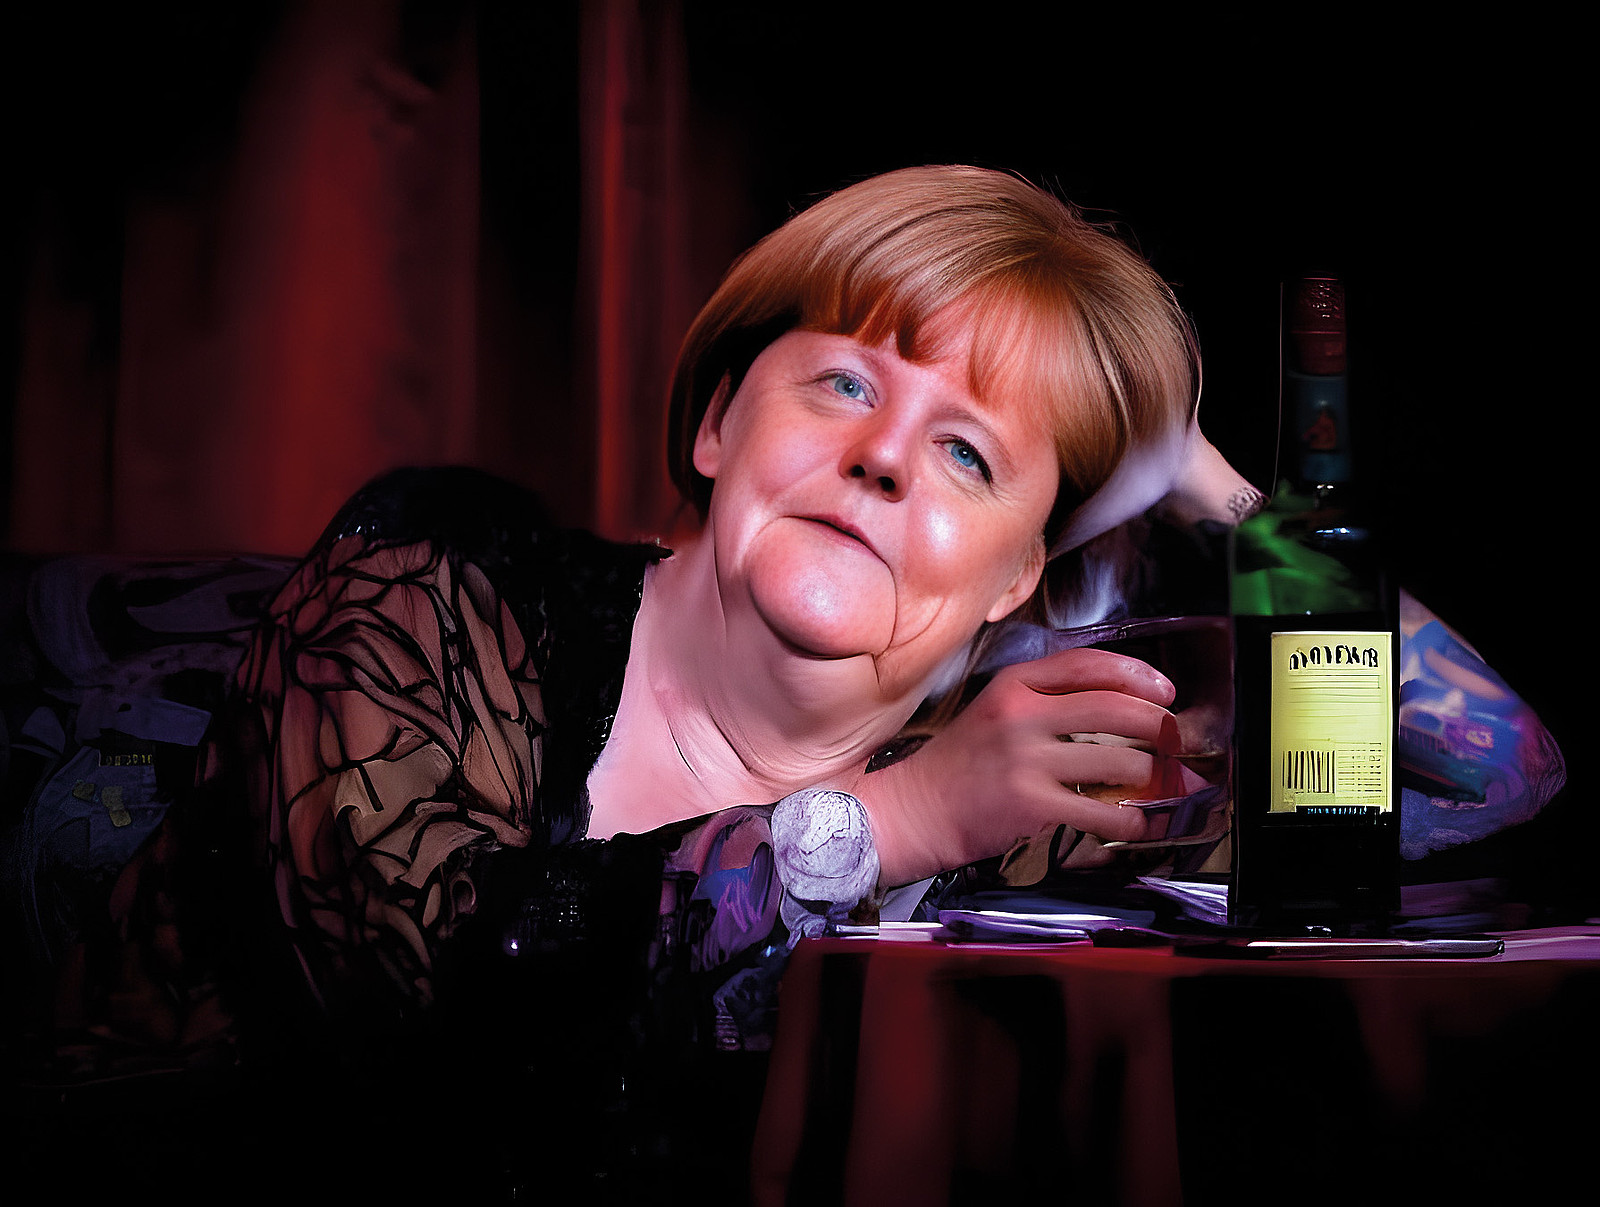 Dasselbe Motiv, aber diesmal mit dem Gesicht von Angela Merkel, das mit einem KI-Tool auf den Körper der Frau gesetzt wurde. Die Übergänge sind etwas holprig, aber beim schnellen Hinschauen könnte man durchaus getäuscht werden.